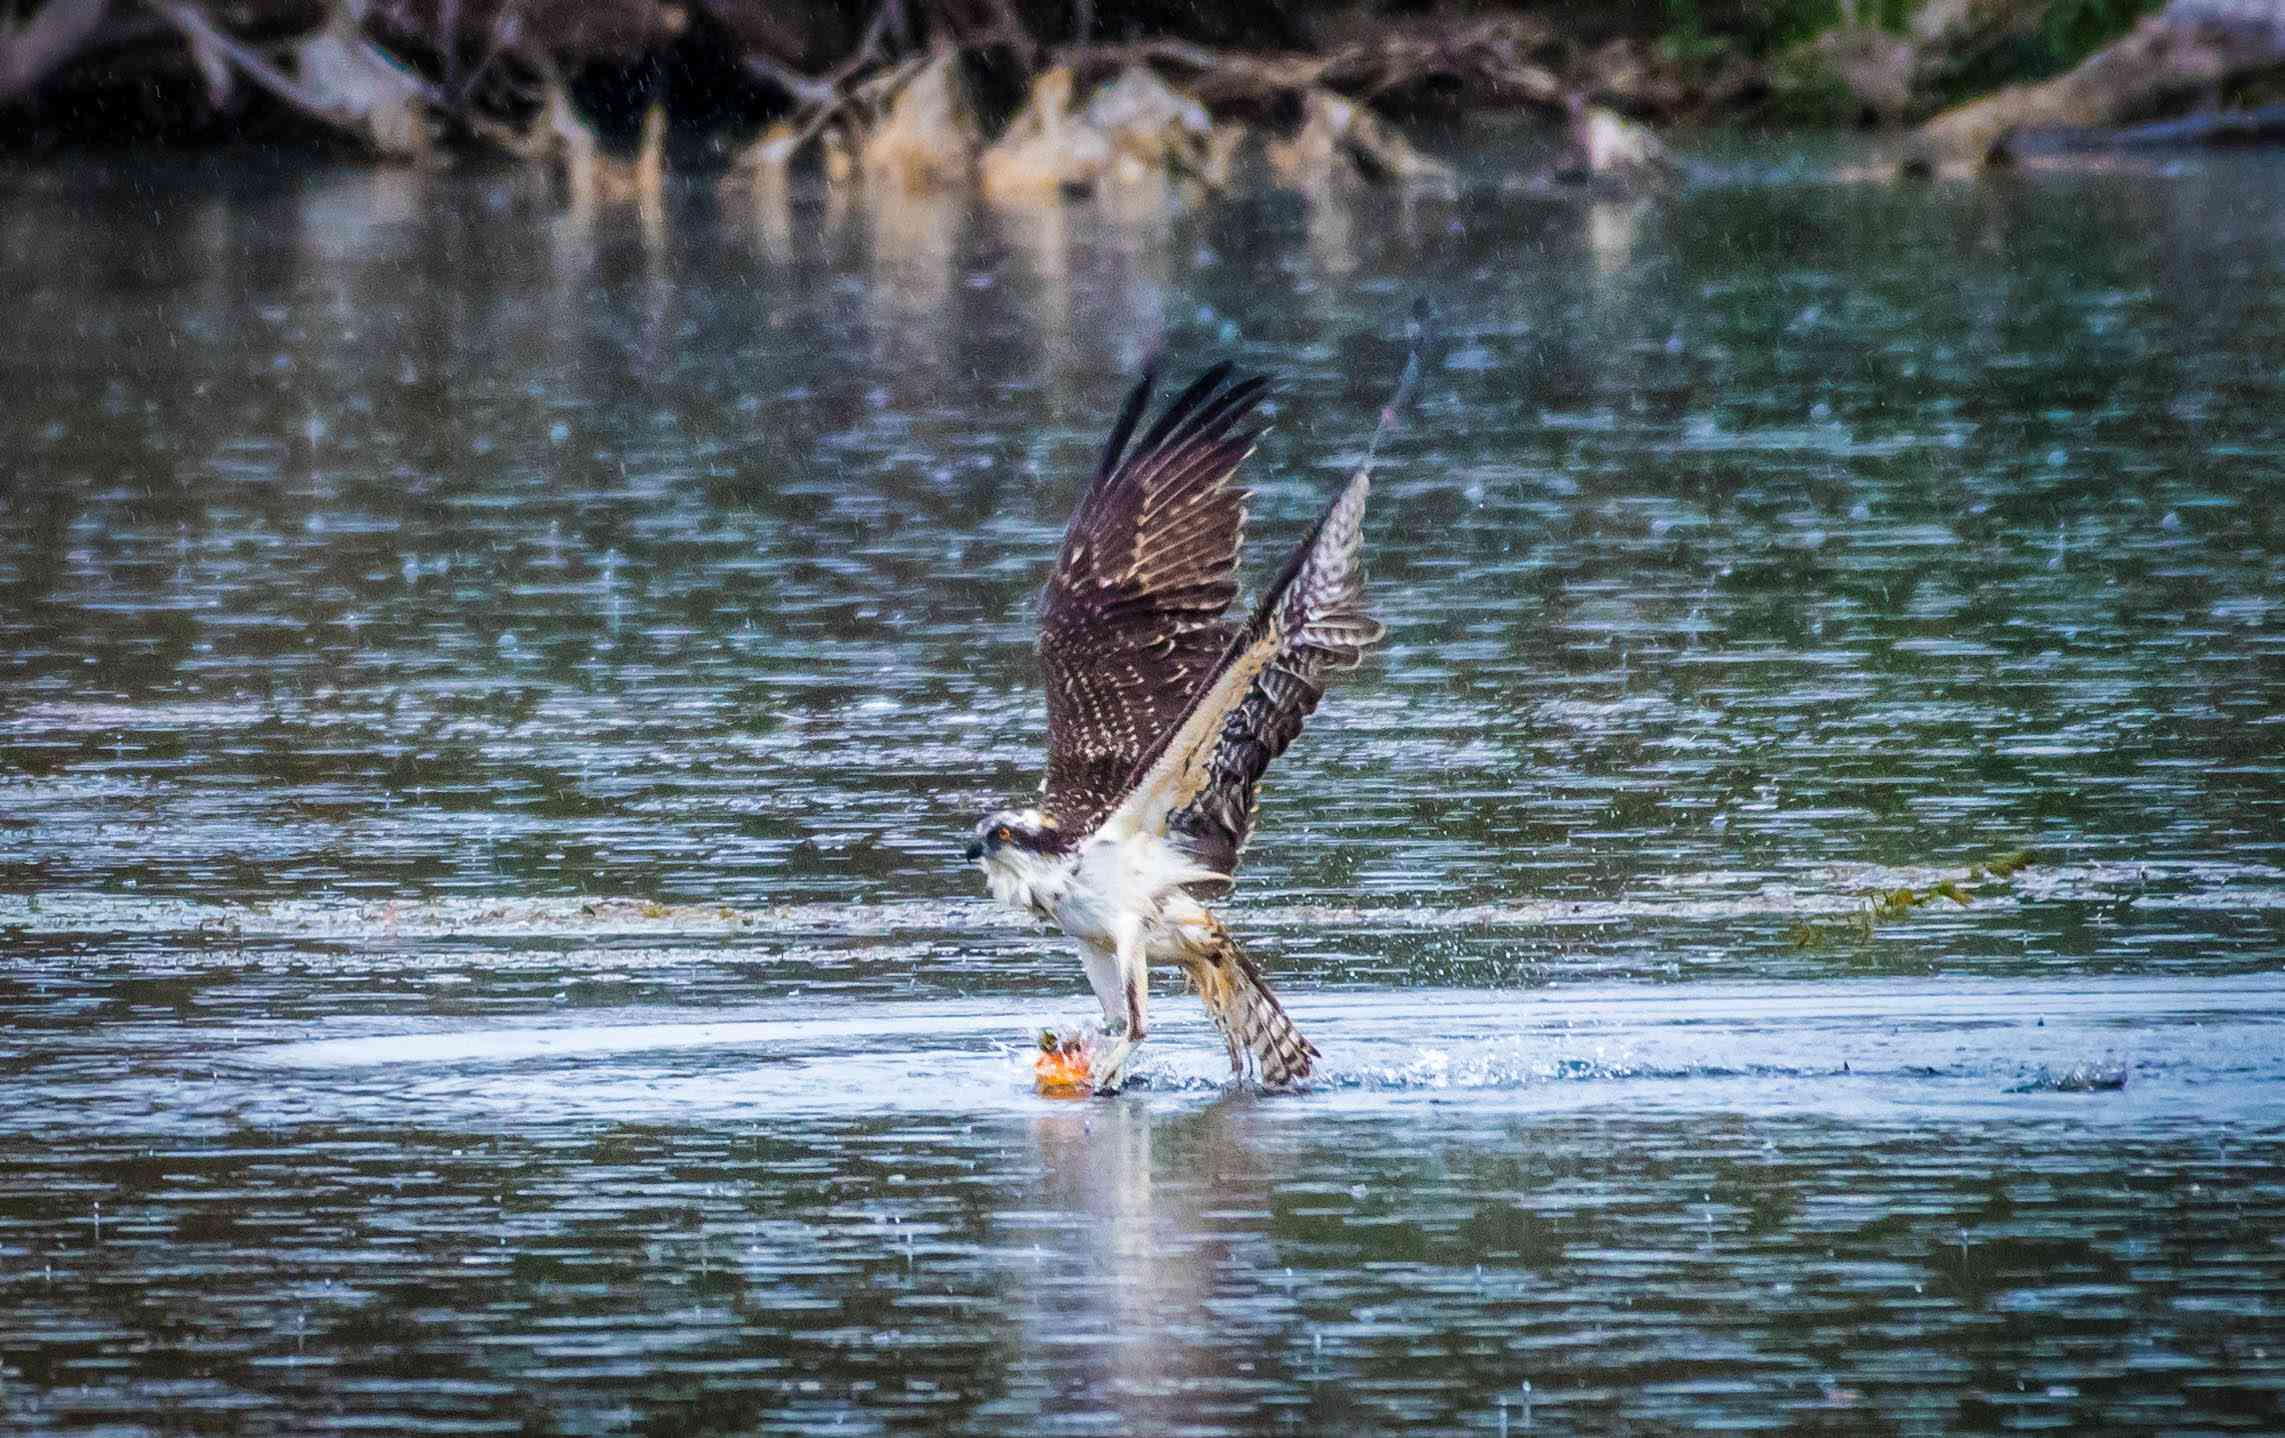 águila pescadora despegando tras aterrizar en el agua con un pez